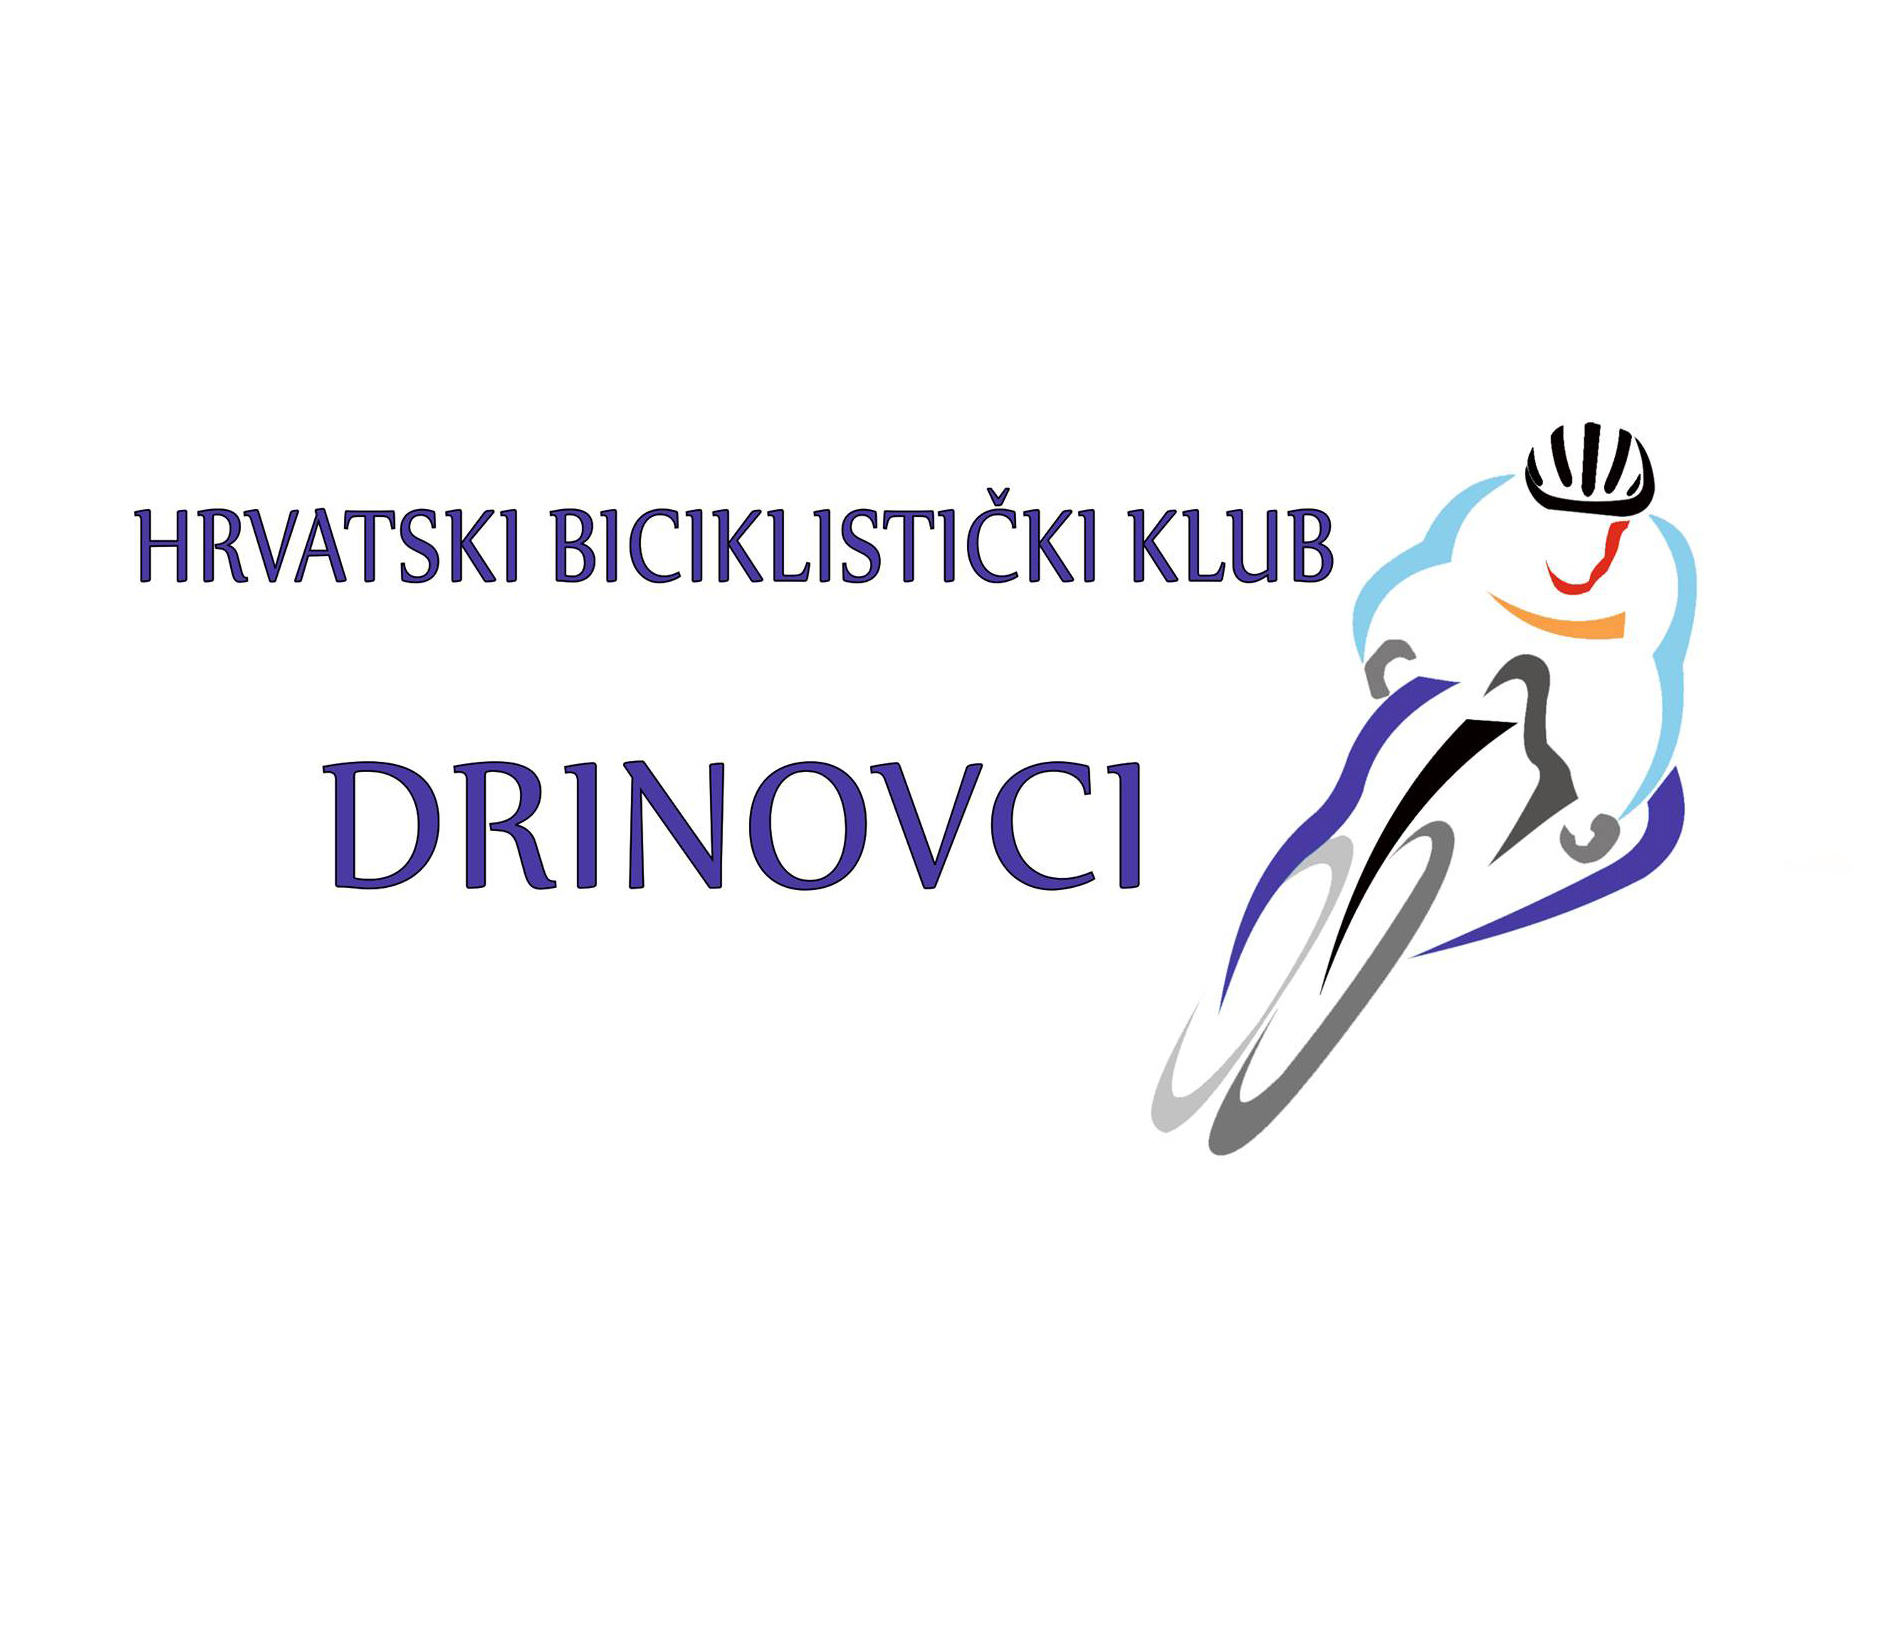 Hrvatski biciklistički klub Drinovci